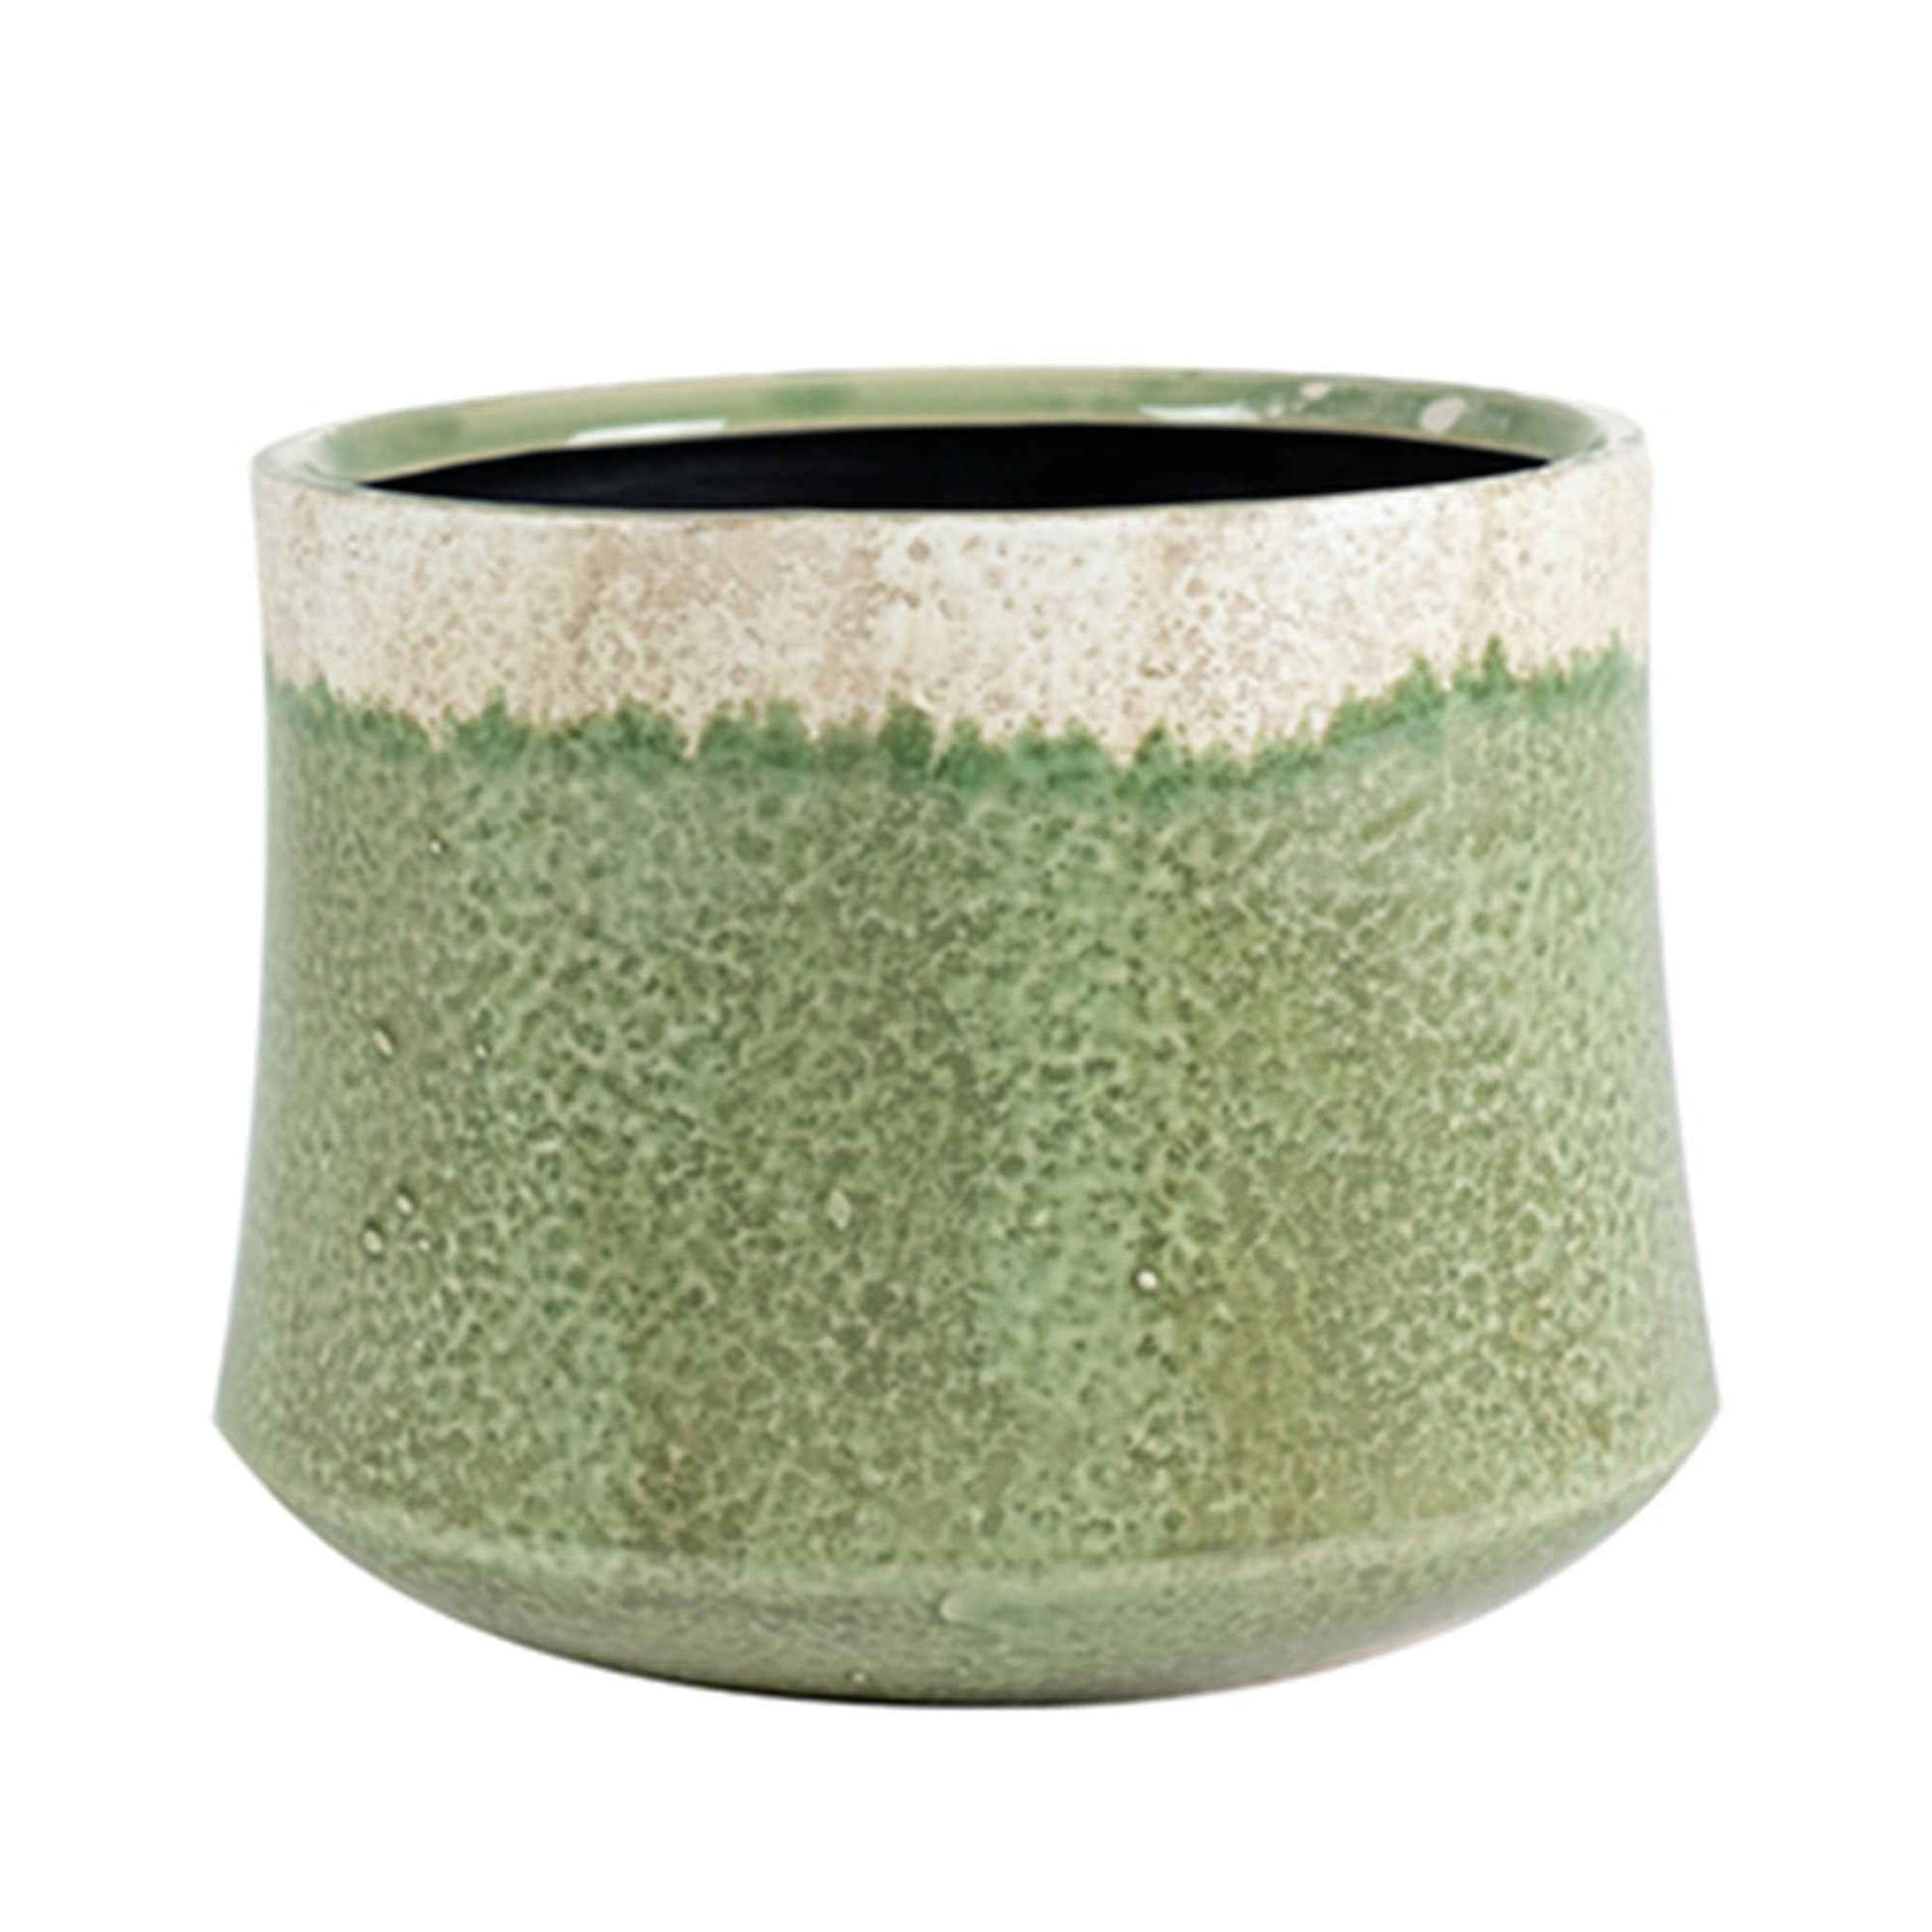 TS pot de fleurs Jorrit rond vert - Pot pour l'intérieur - Collection colorée